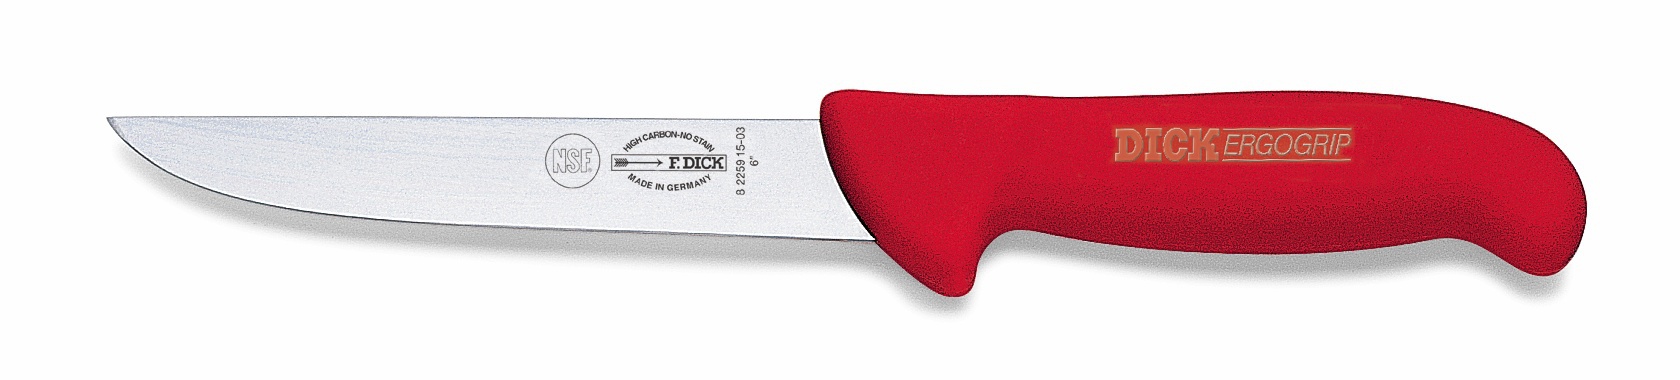 Vykosťovací nůž se širokou čepelí, červený v délce 15 cm